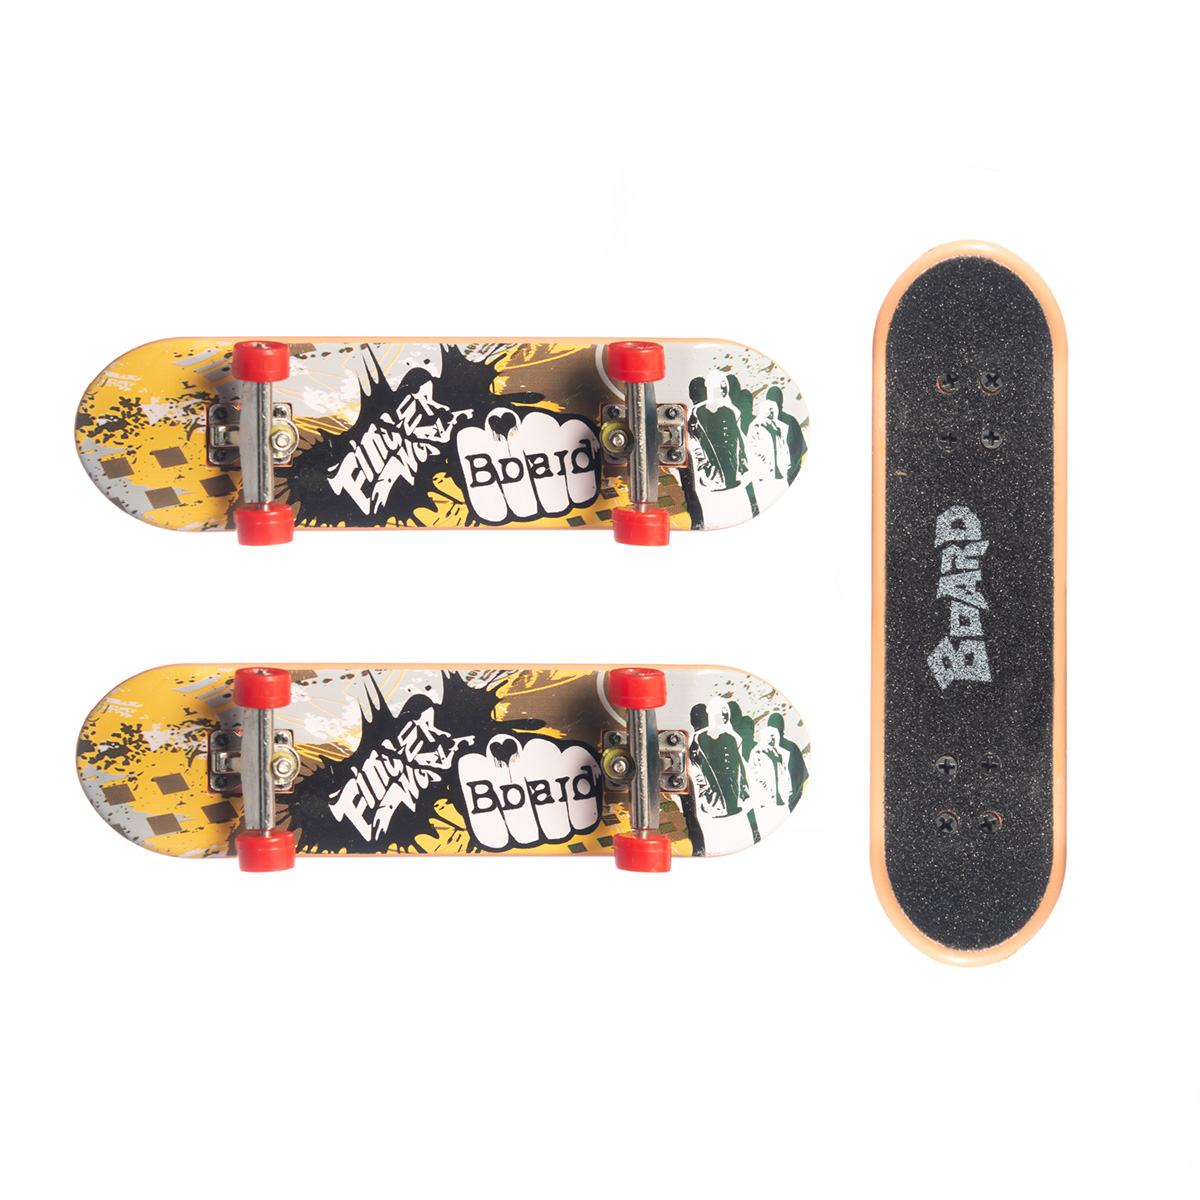 Köp Skills Finger skateboard 3 pack på